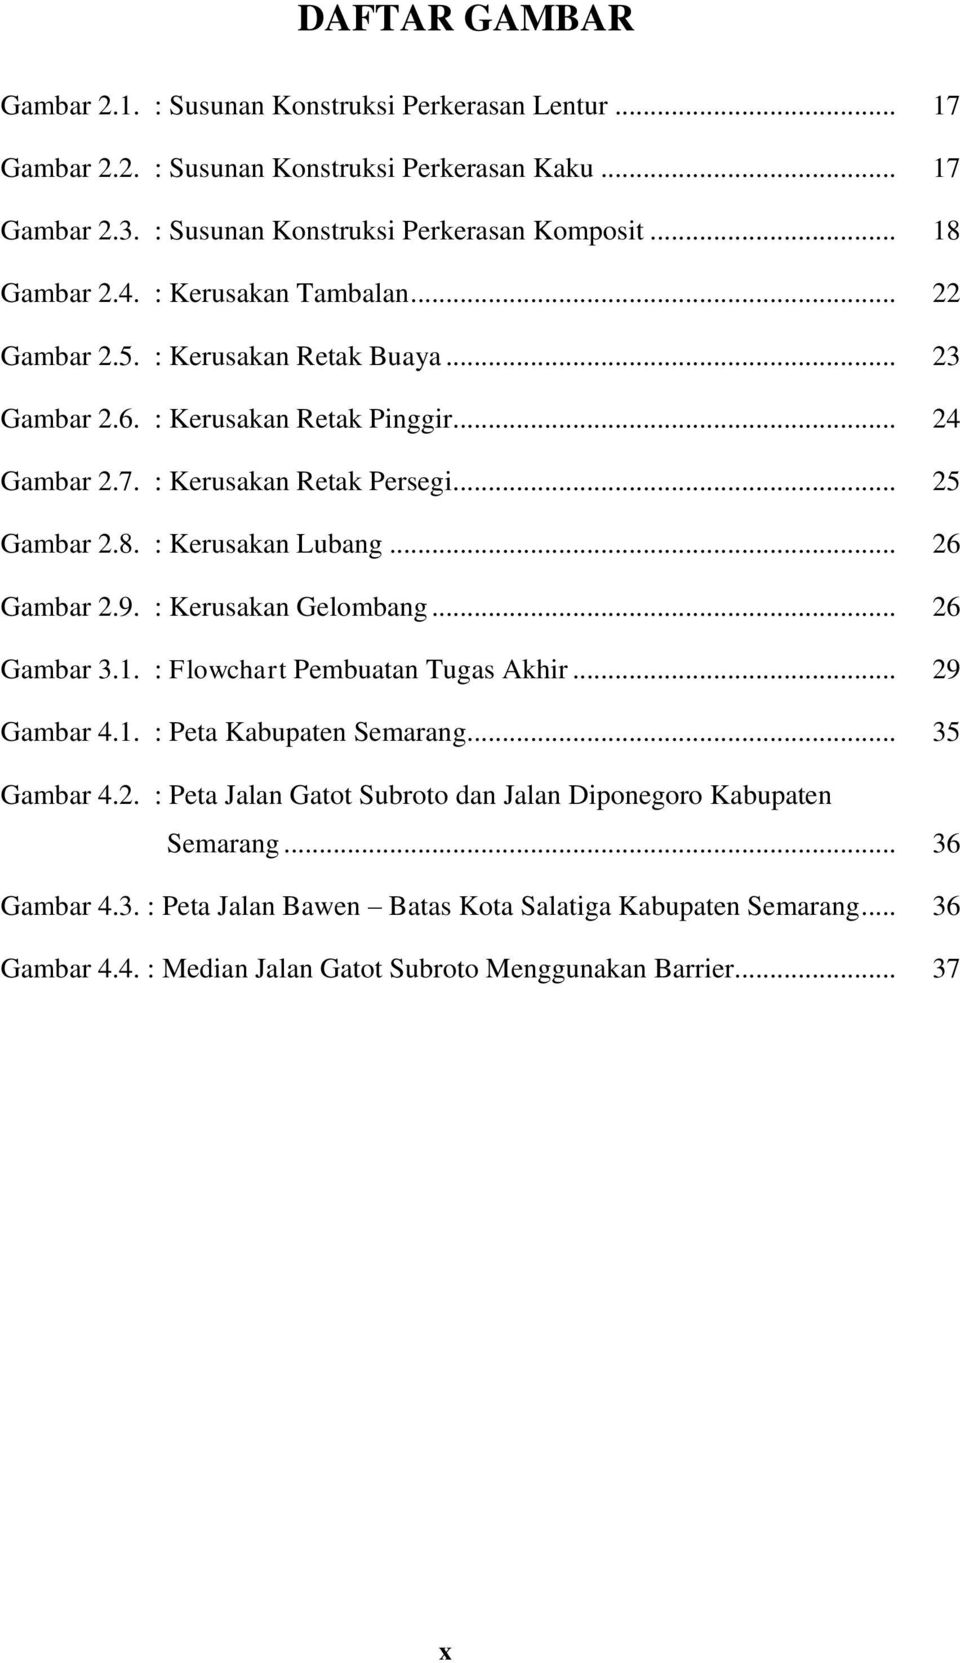 .. 26 Gambar 2.9. : Kerusakan Gelombang... 26 Gambar 3.1. : Flowchart Pembuatan Tugas Akhir... 29 Gambar 4.1. : Peta Kabupaten Semarang... 35 Gambar 4.2. : Peta Jalan Gatot Subroto dan Jalan Diponegoro Kabupaten Semarang.